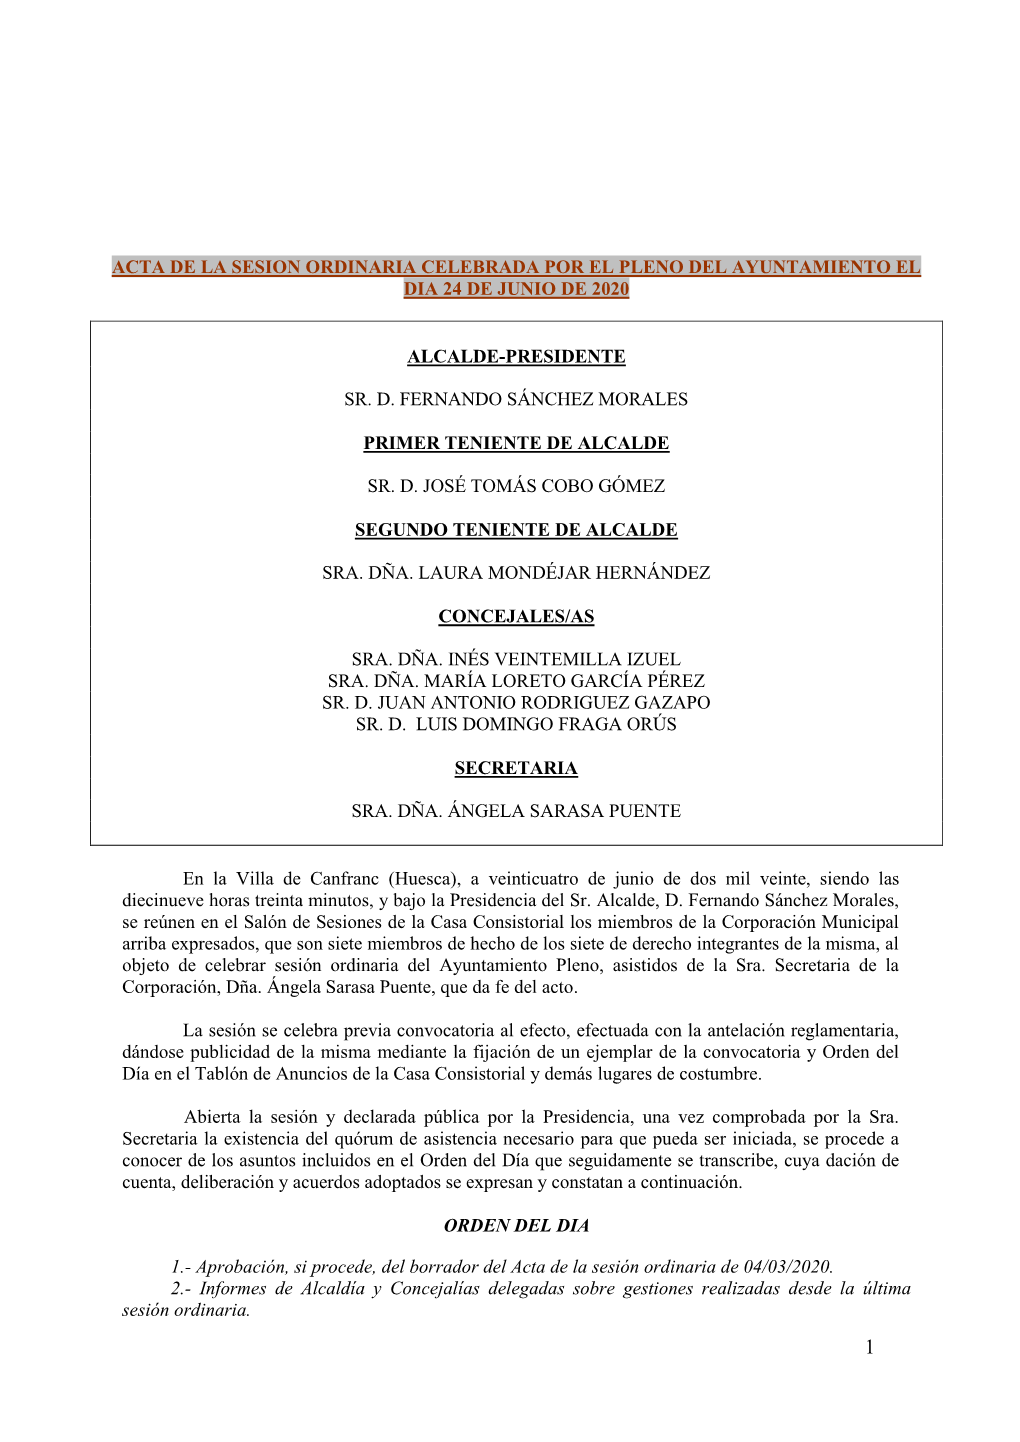 Acta De La Sesion Ordinaria Celebrada Por El Pleno Del Ayuntamiento El Dia 24 De Junio De 2020